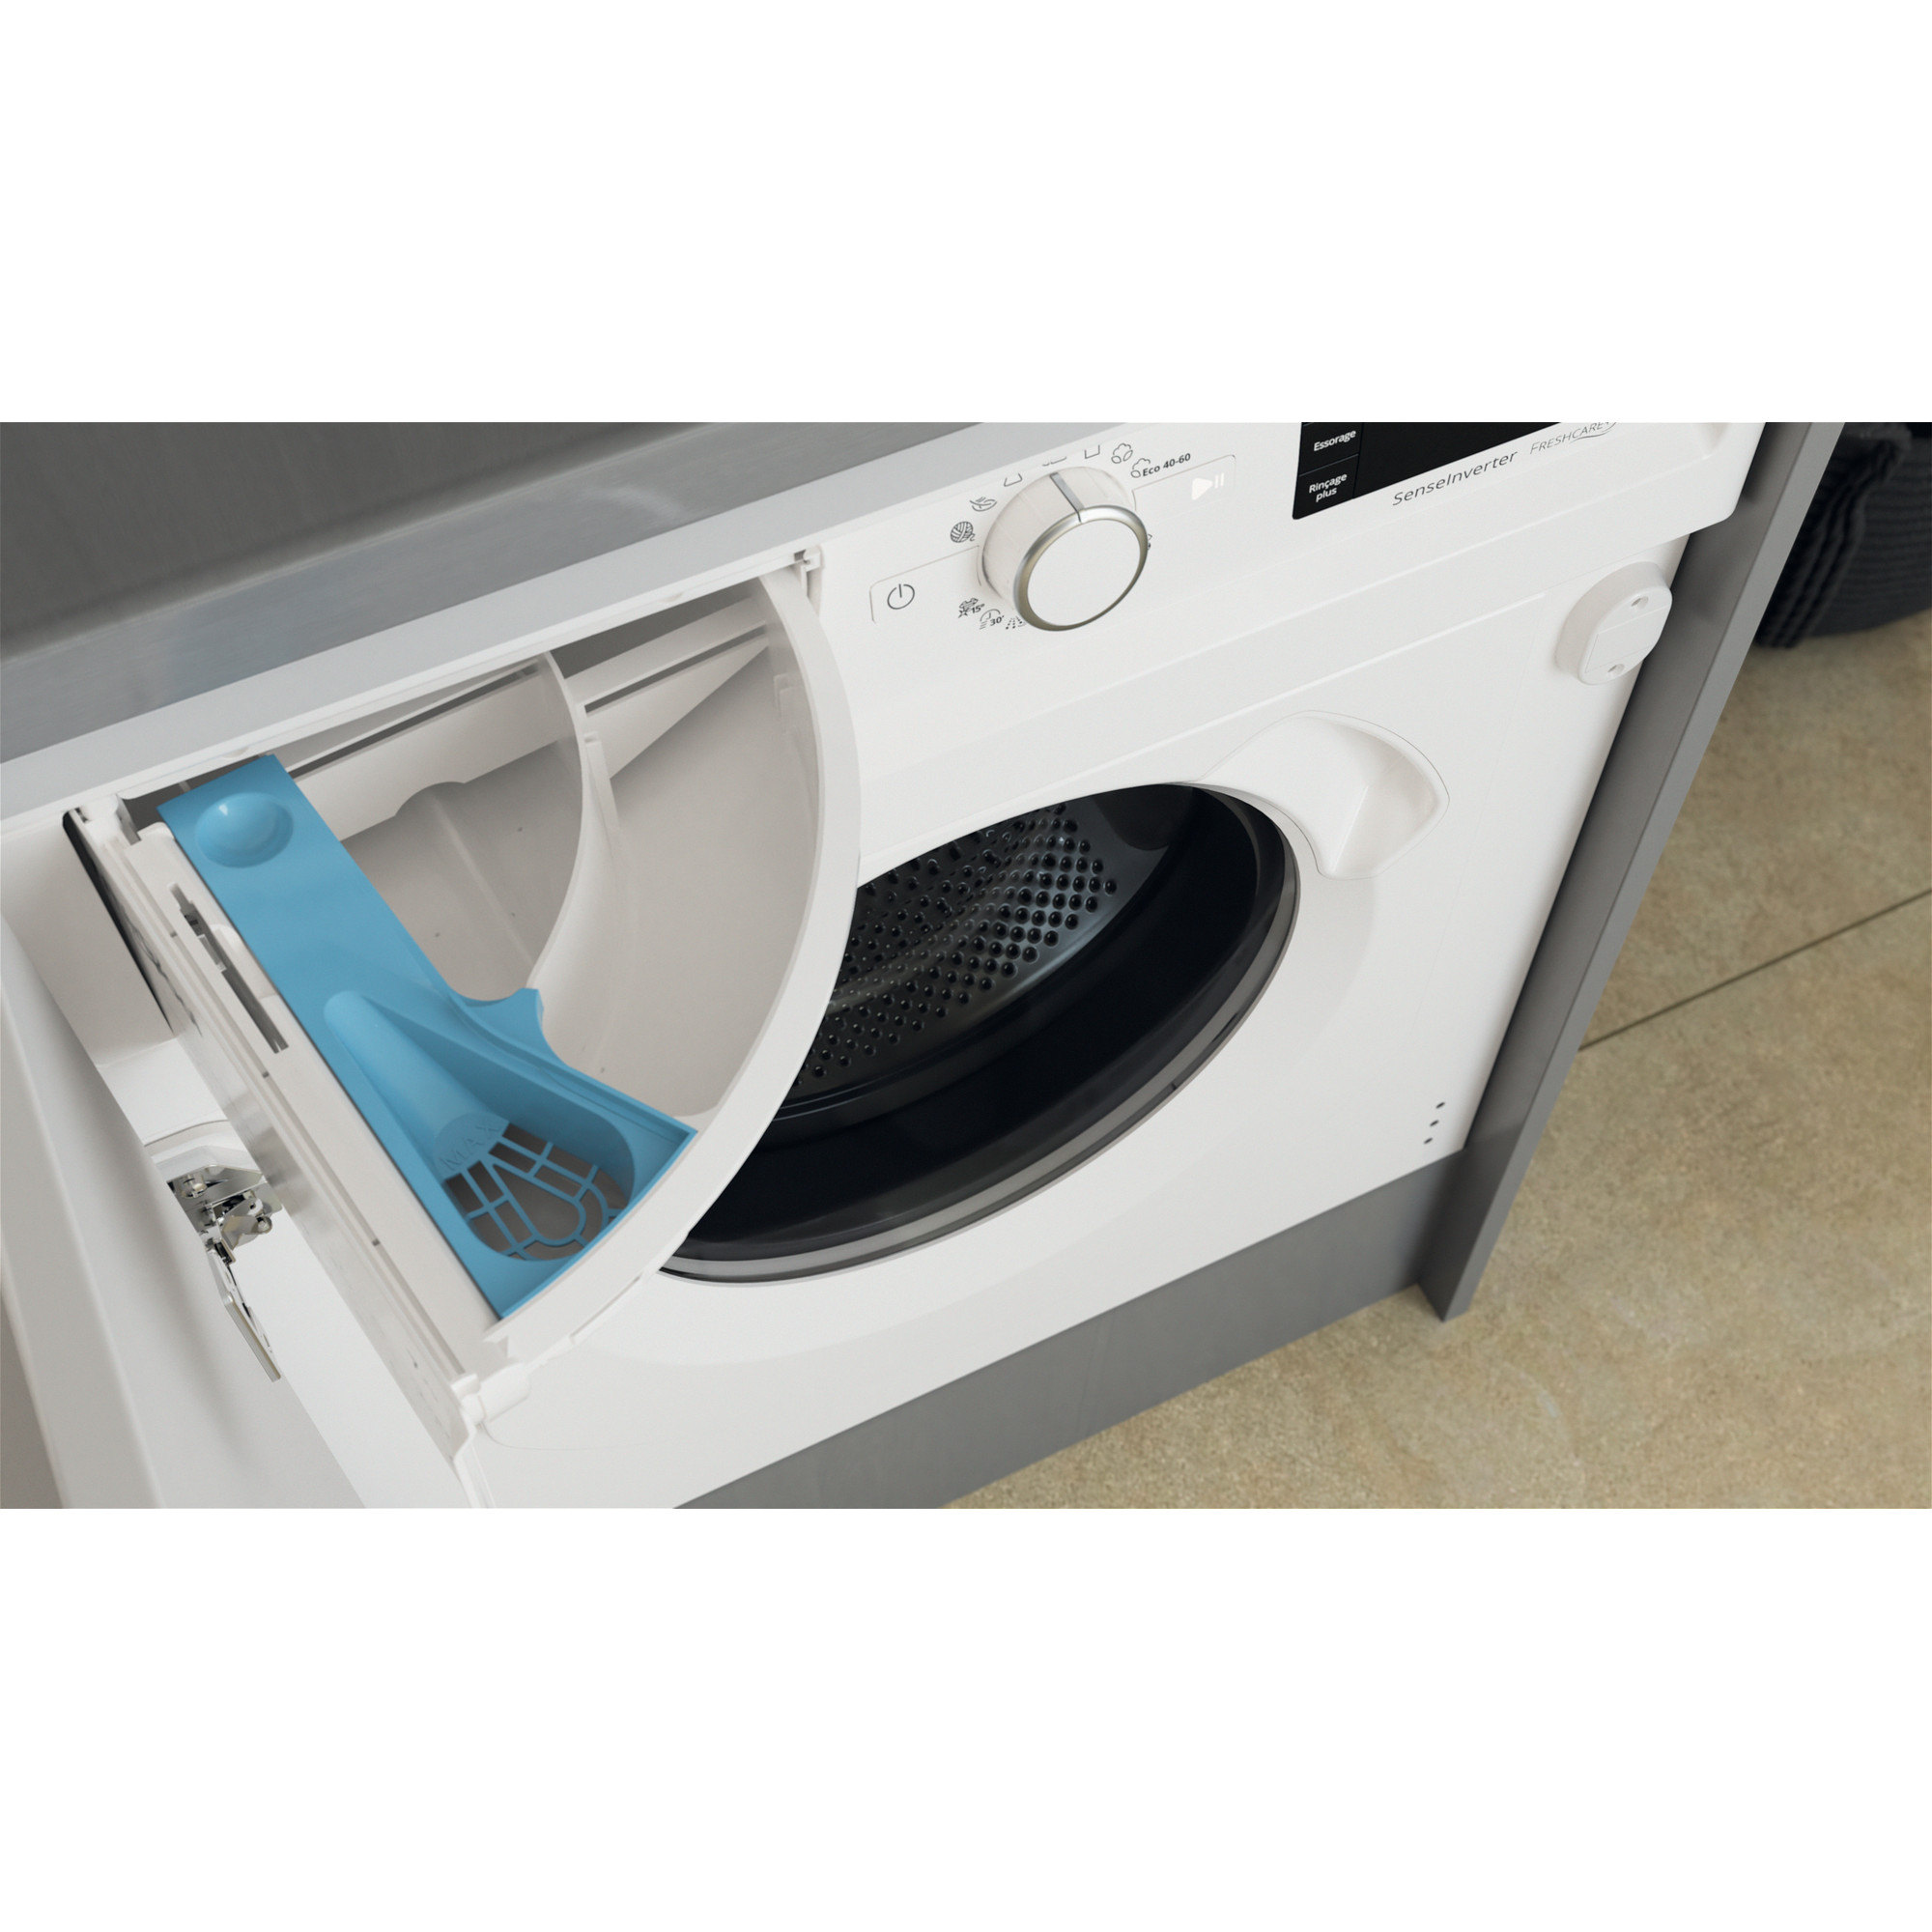 Oferta del día  Whirlpool BIWDWG751482EUN lavadora/secadora carga